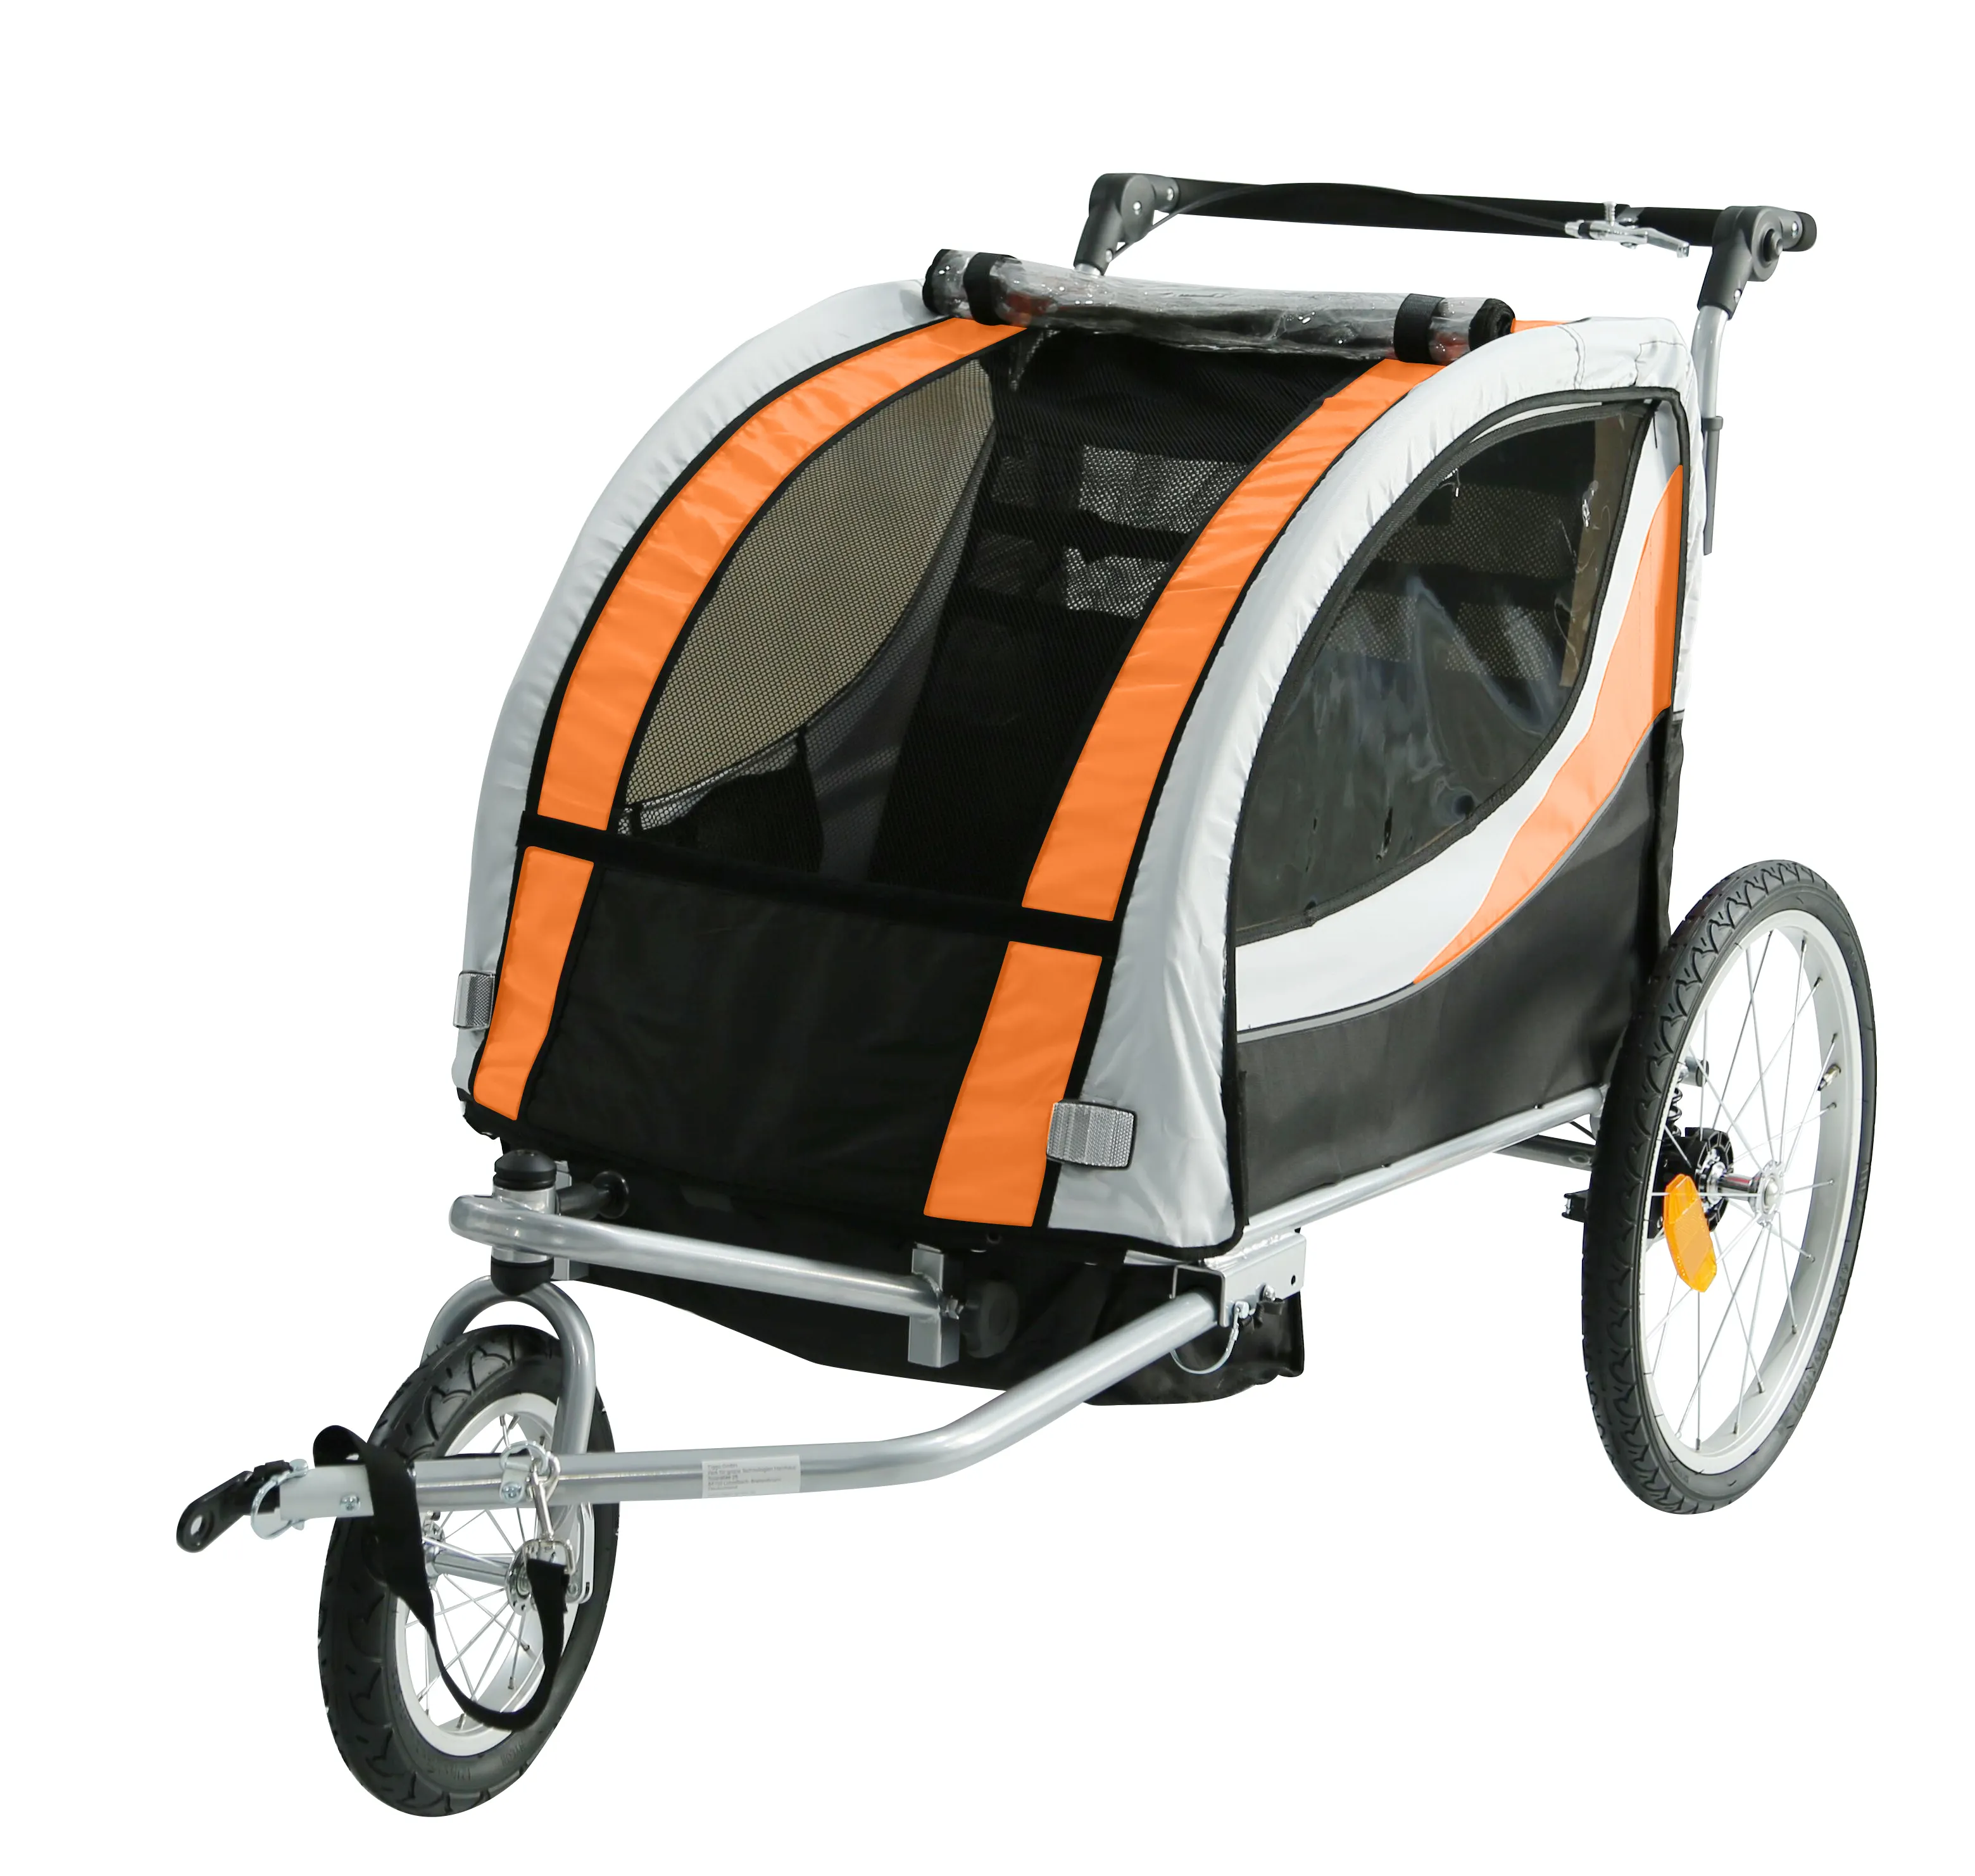 2021 دراجة أطفال مقطورة إطار فولاذي مع دراجة عالية الجودة عربة ، الصينية مصنع بيع طفل عداء ببطء مقطورة دراجة